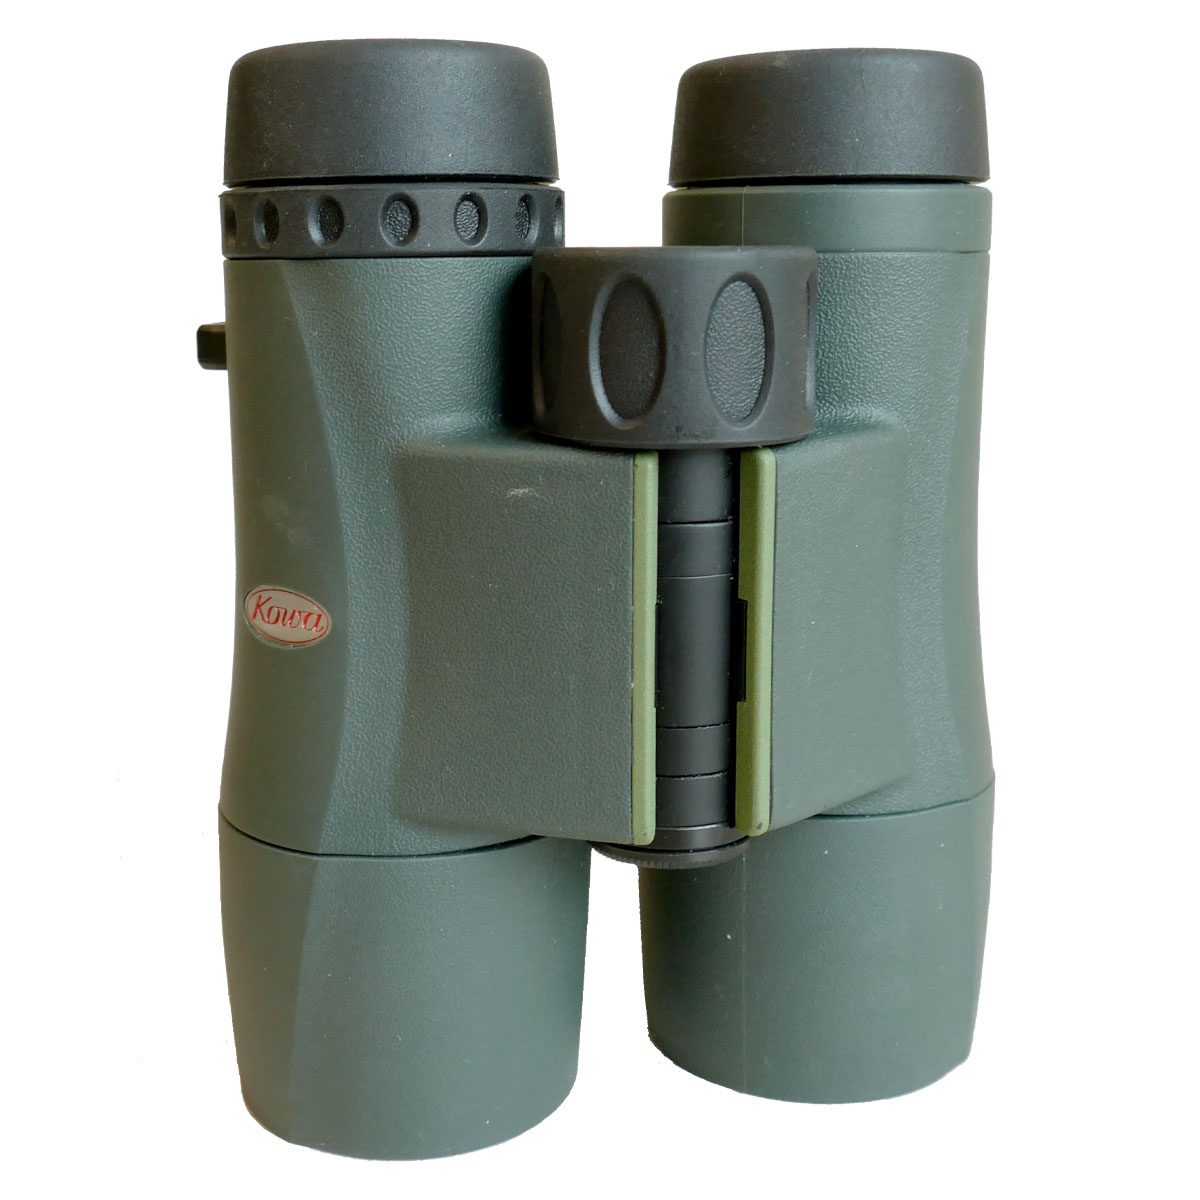 Green binoculars